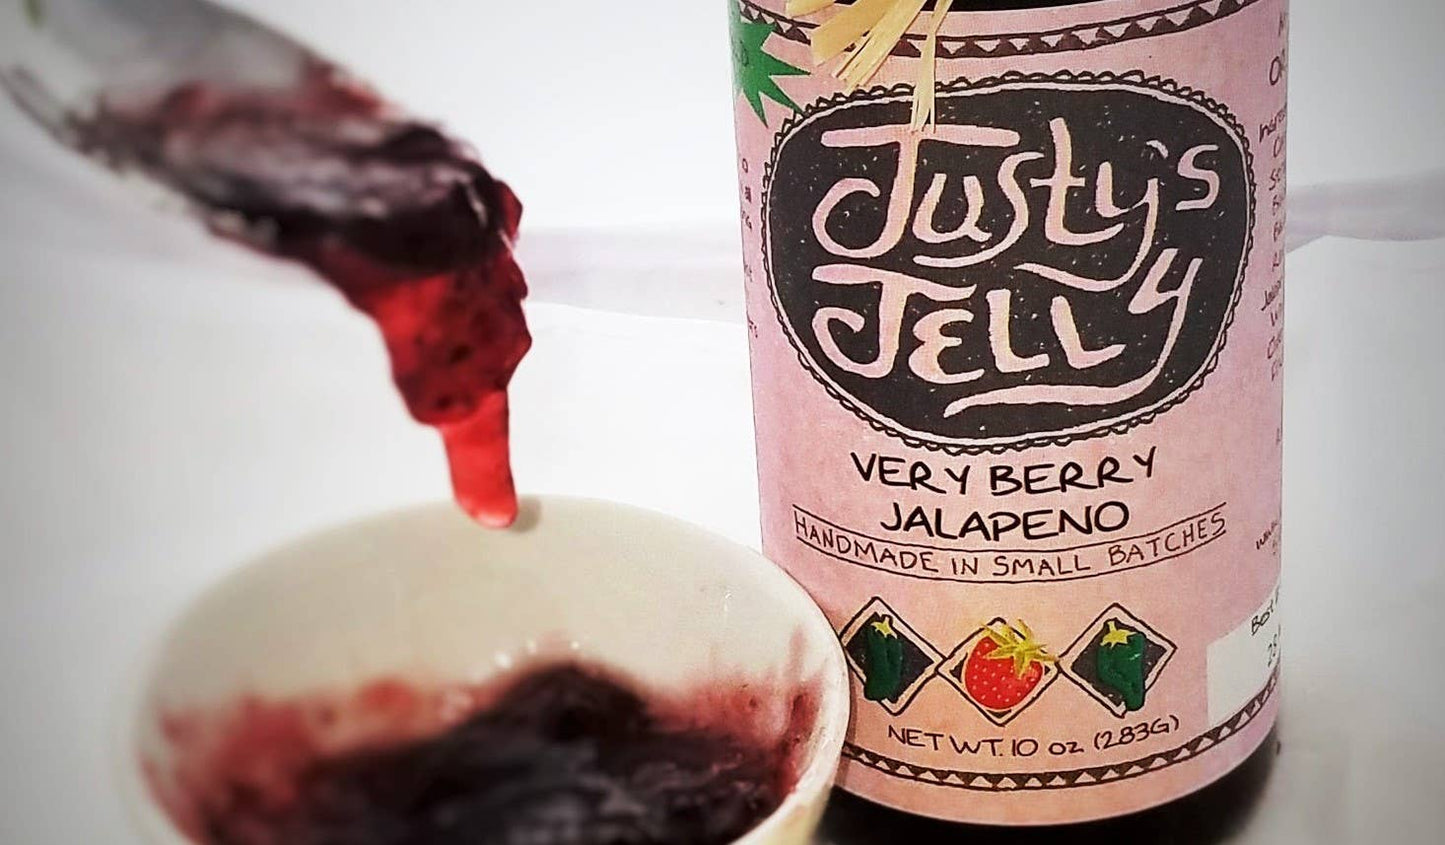 Very Berry Jalapeno Jelly